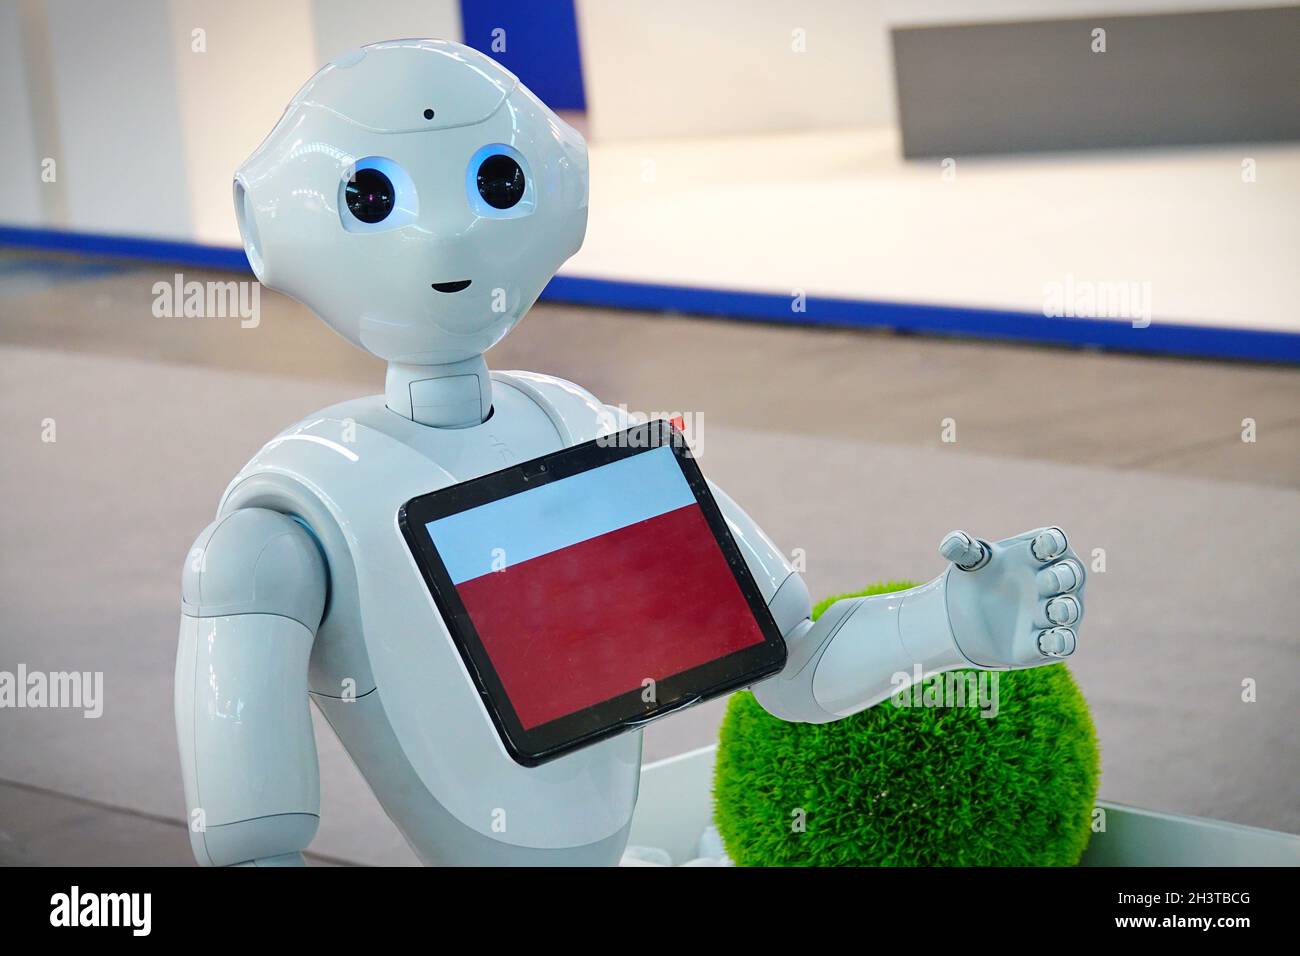 „Pepper“-Roboterassistent mit Informationsbildschirm, der Informationen zur Verfügung stellen muss. Mailand, Italien - Oktober 2021 Stockfoto